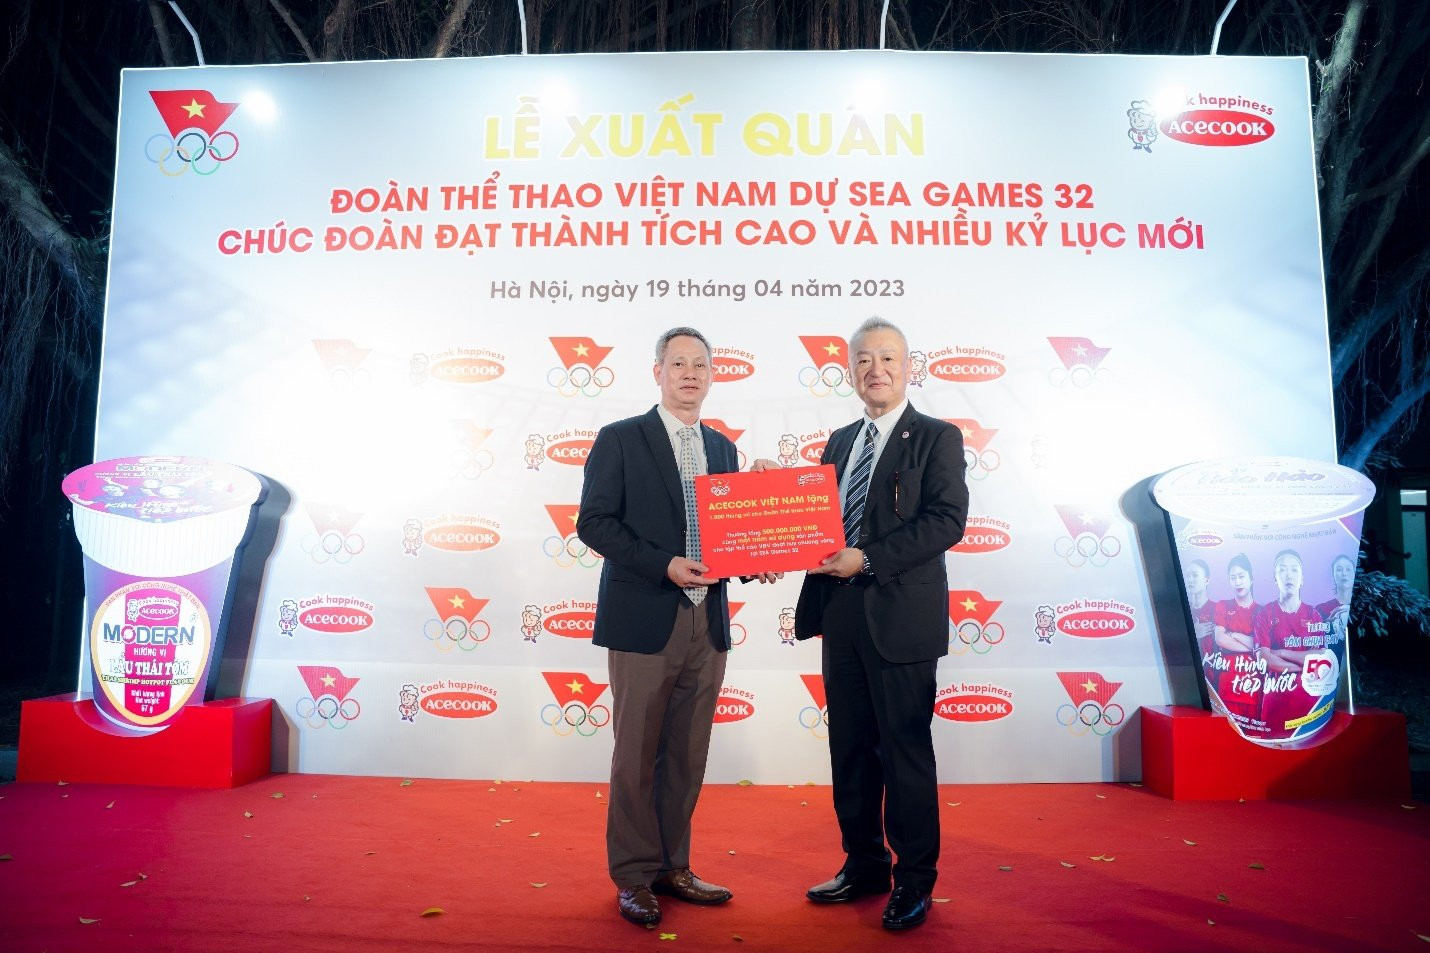 ACECOOK Việt Nam đồng hành cùng Đoàn thể thao Việt Nam dự SEA Games 32 - 2